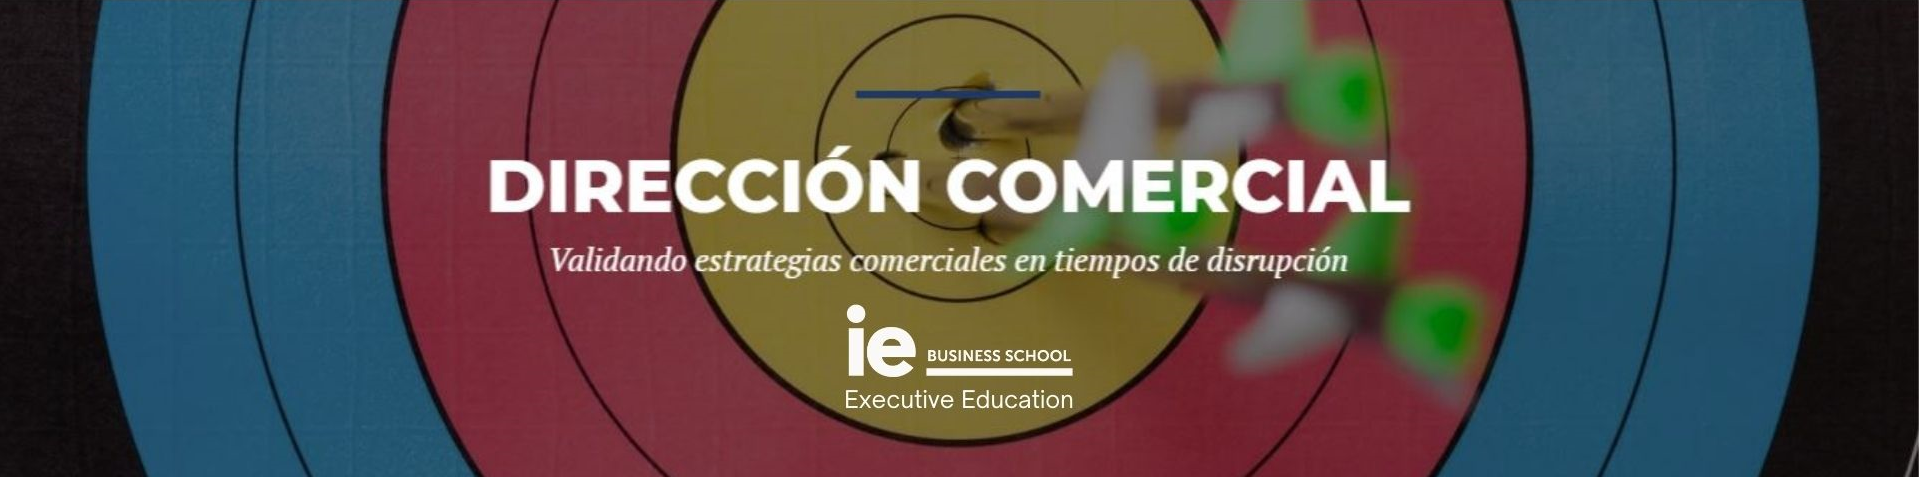 Programa Ejecutivo | Dirección Comercial | IE Business School | Cámara de Comercio de Murcia